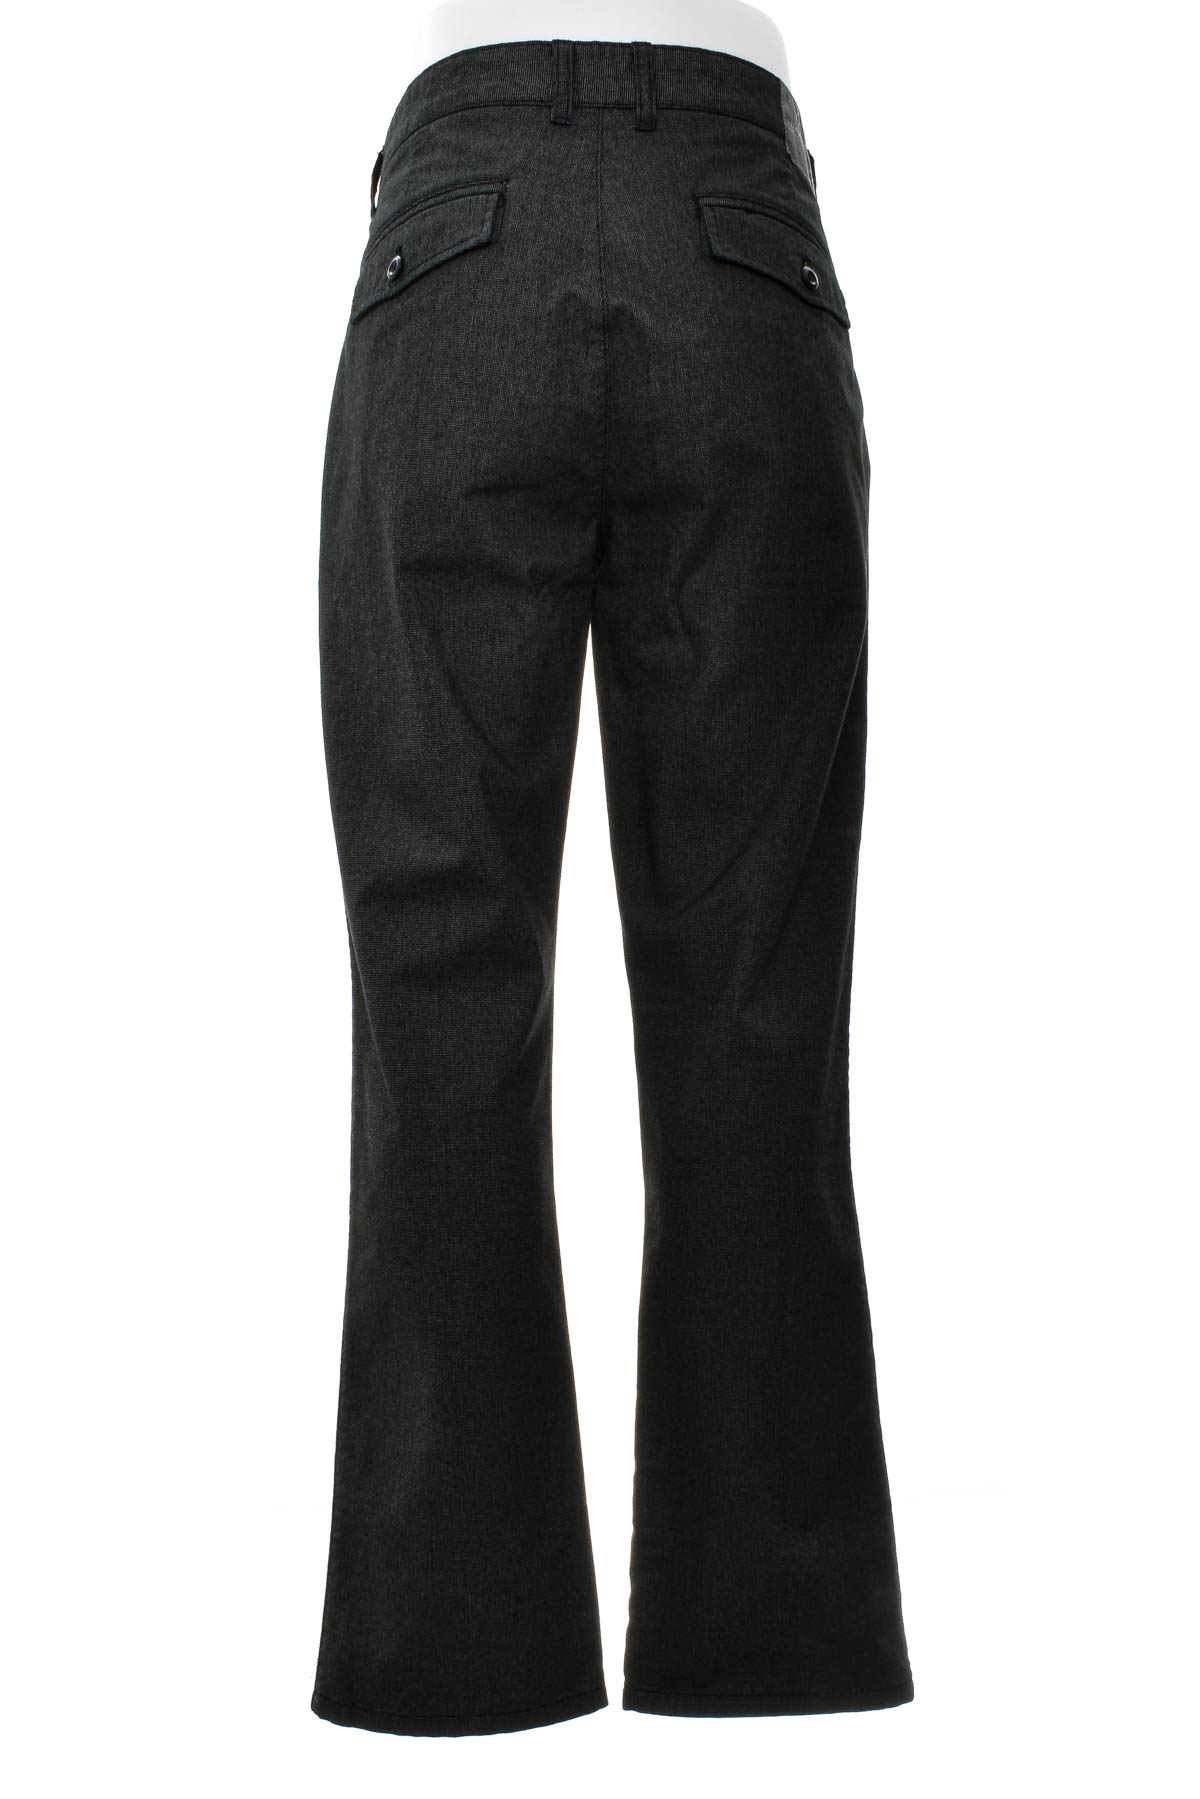 Pantalon pentru bărbați - COOL CODE - 1